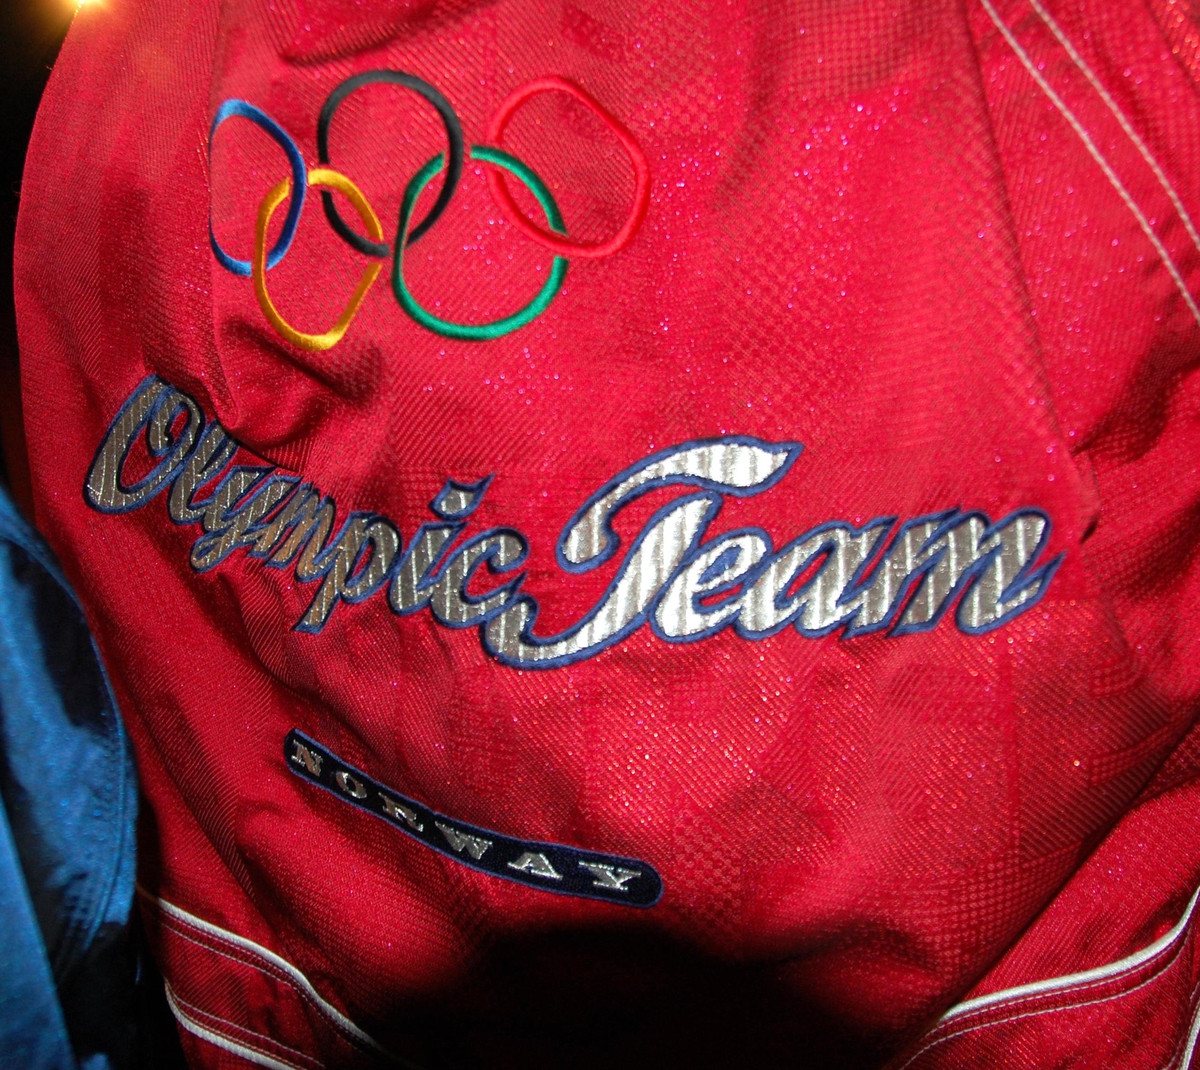 Rød jakke med hvite og blå striper. Jakken har tre lommer. De olympiske ringene i farger brodert på ryggen.